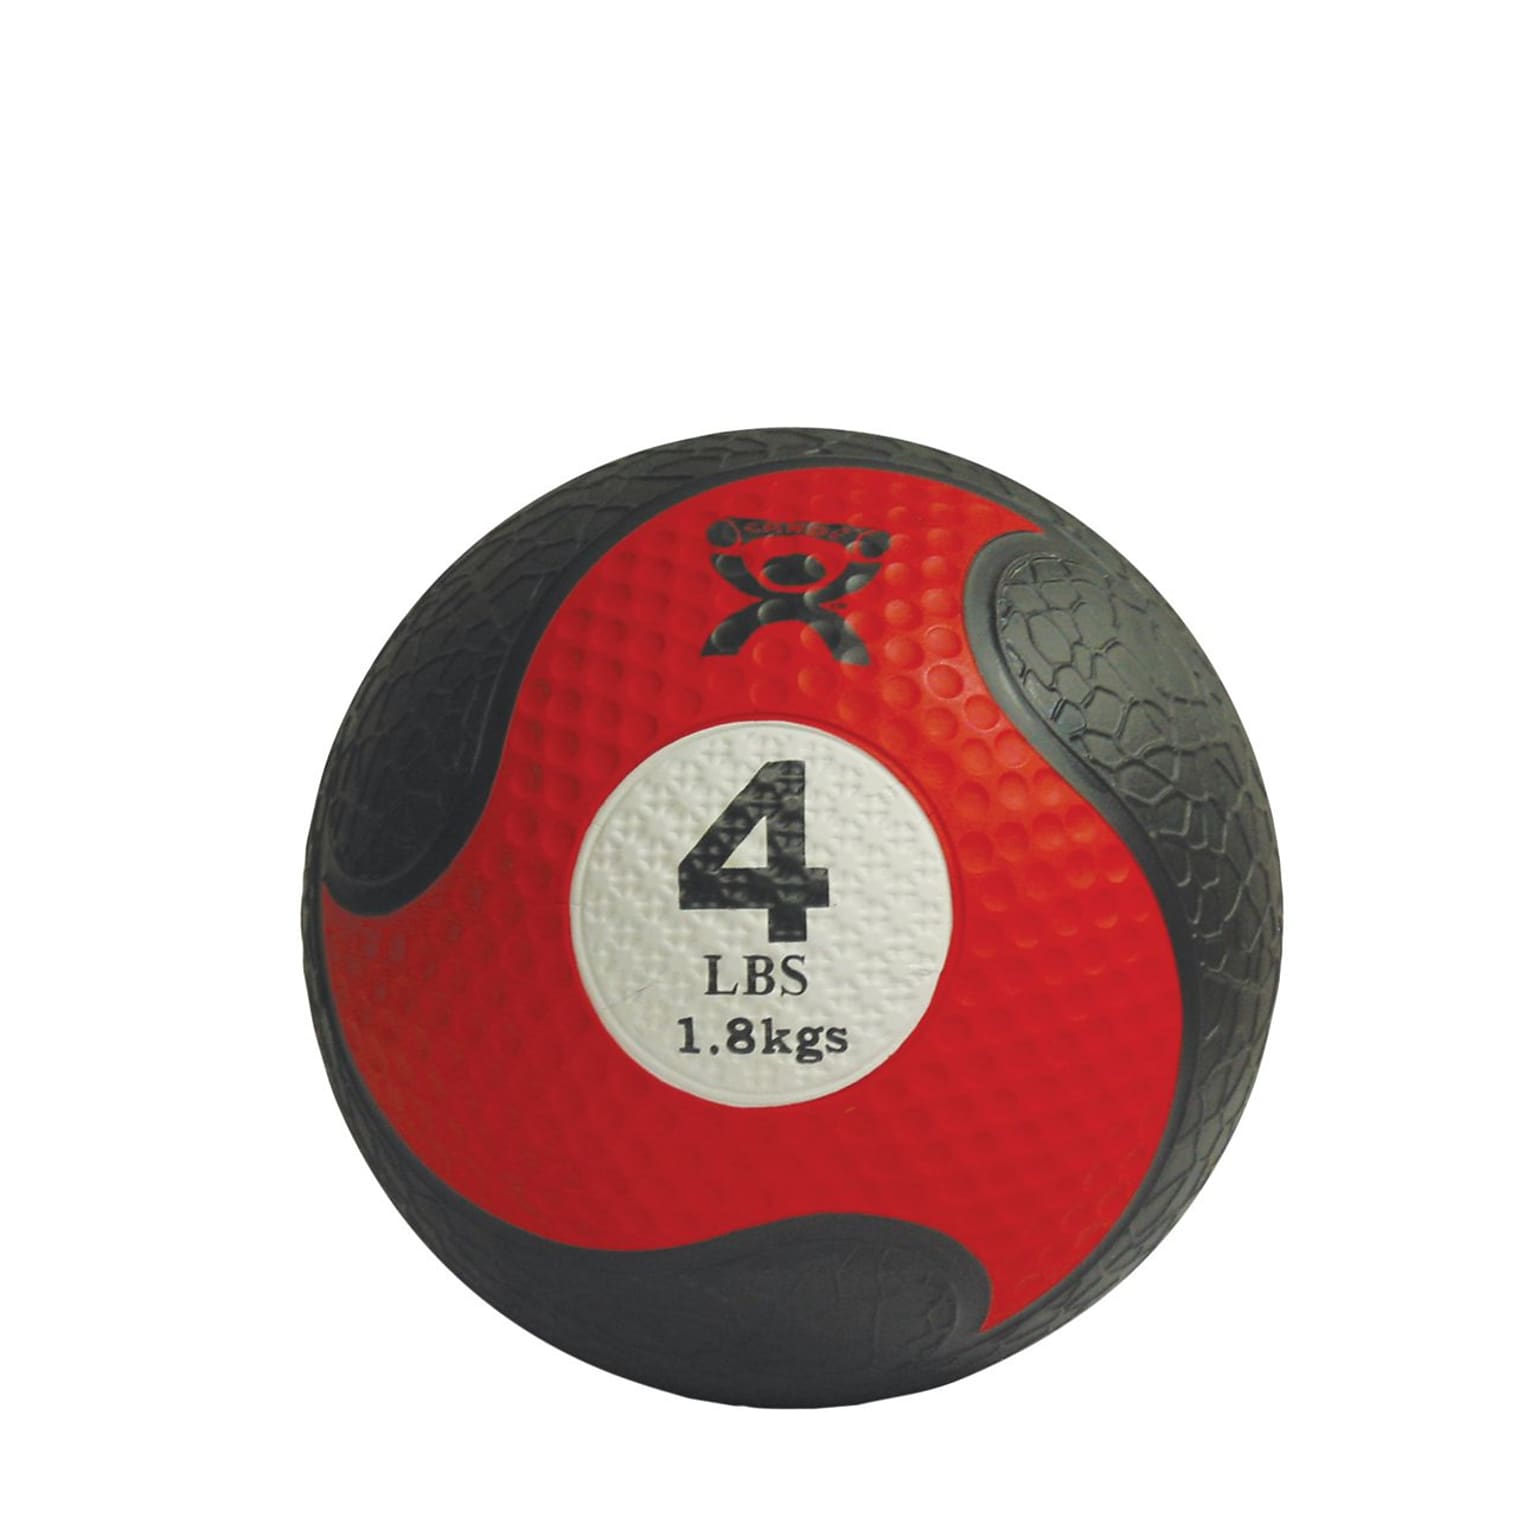 CanDo® Firm Medicine Ball; 8 Diameter, Red, 4 lb